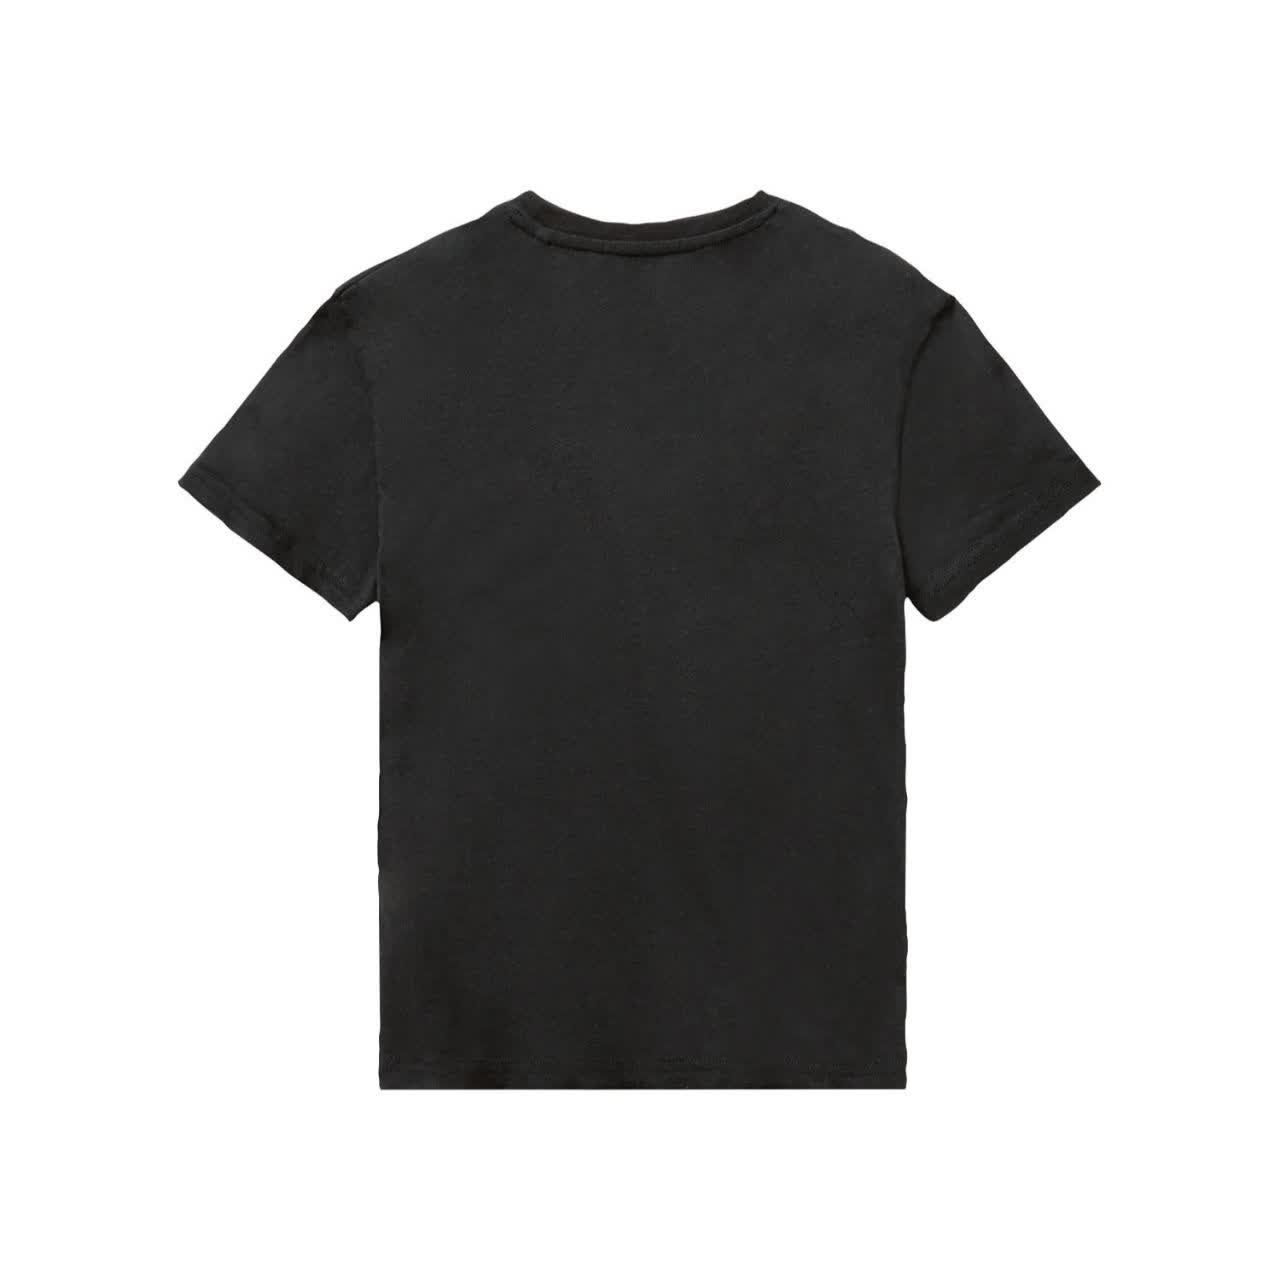 تی شرت آستین کوتاه پسرانه پیپرتس مدل BY9701 -  - 2